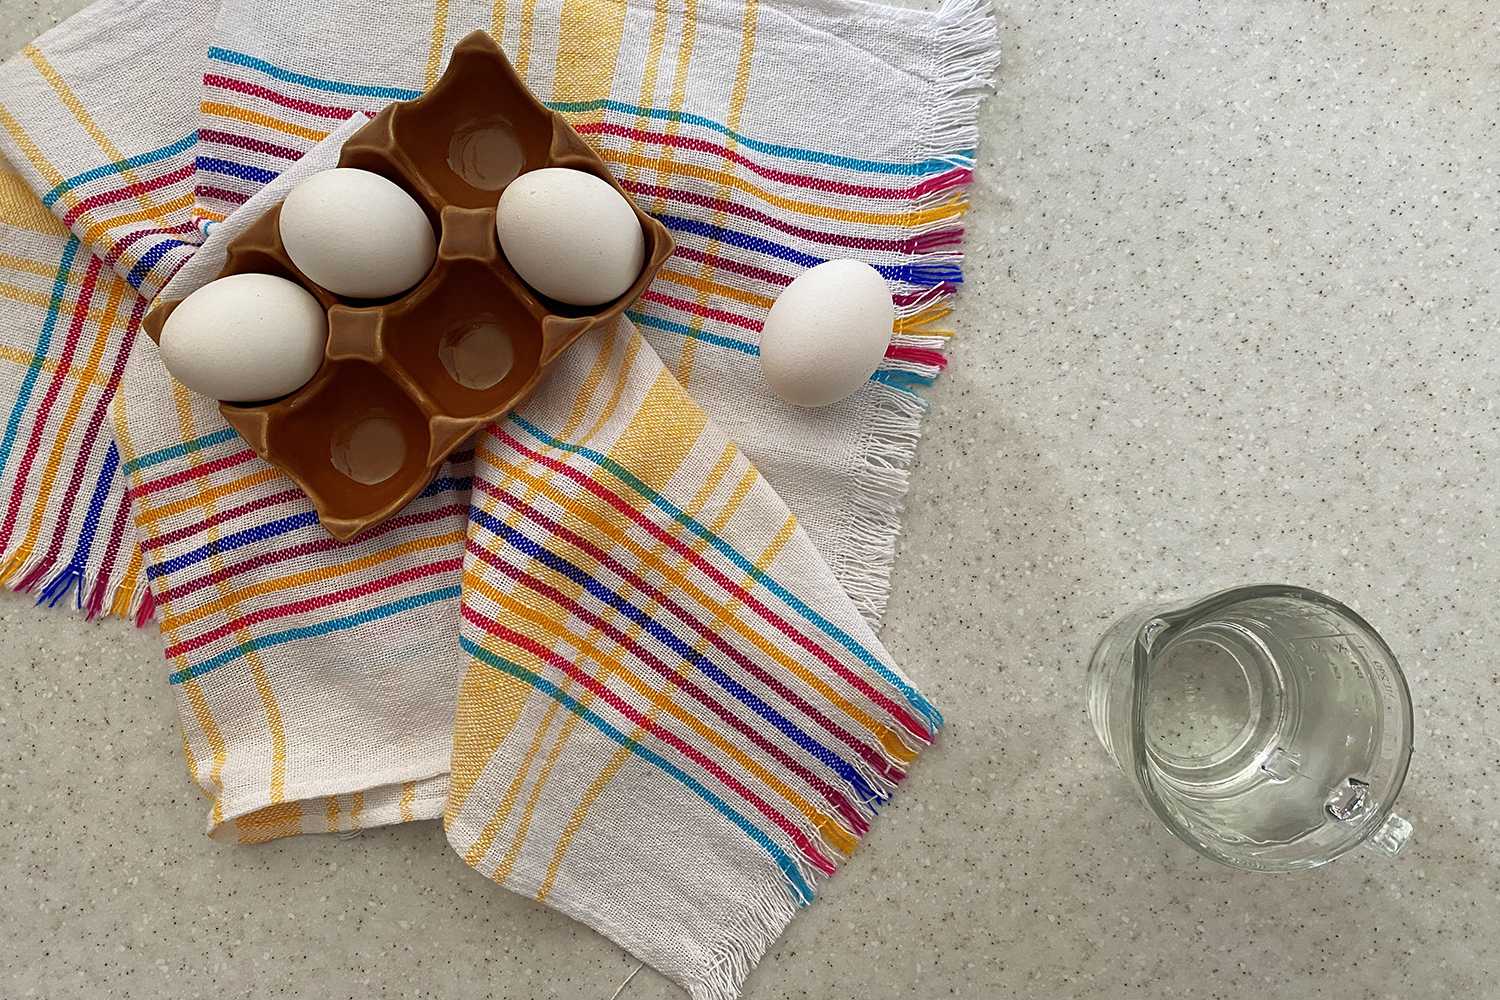 https://www.corriecooks.com/wp-content/uploads/2020/06/Instant-Pot-Hard-Boiled-Eggs1.jpg